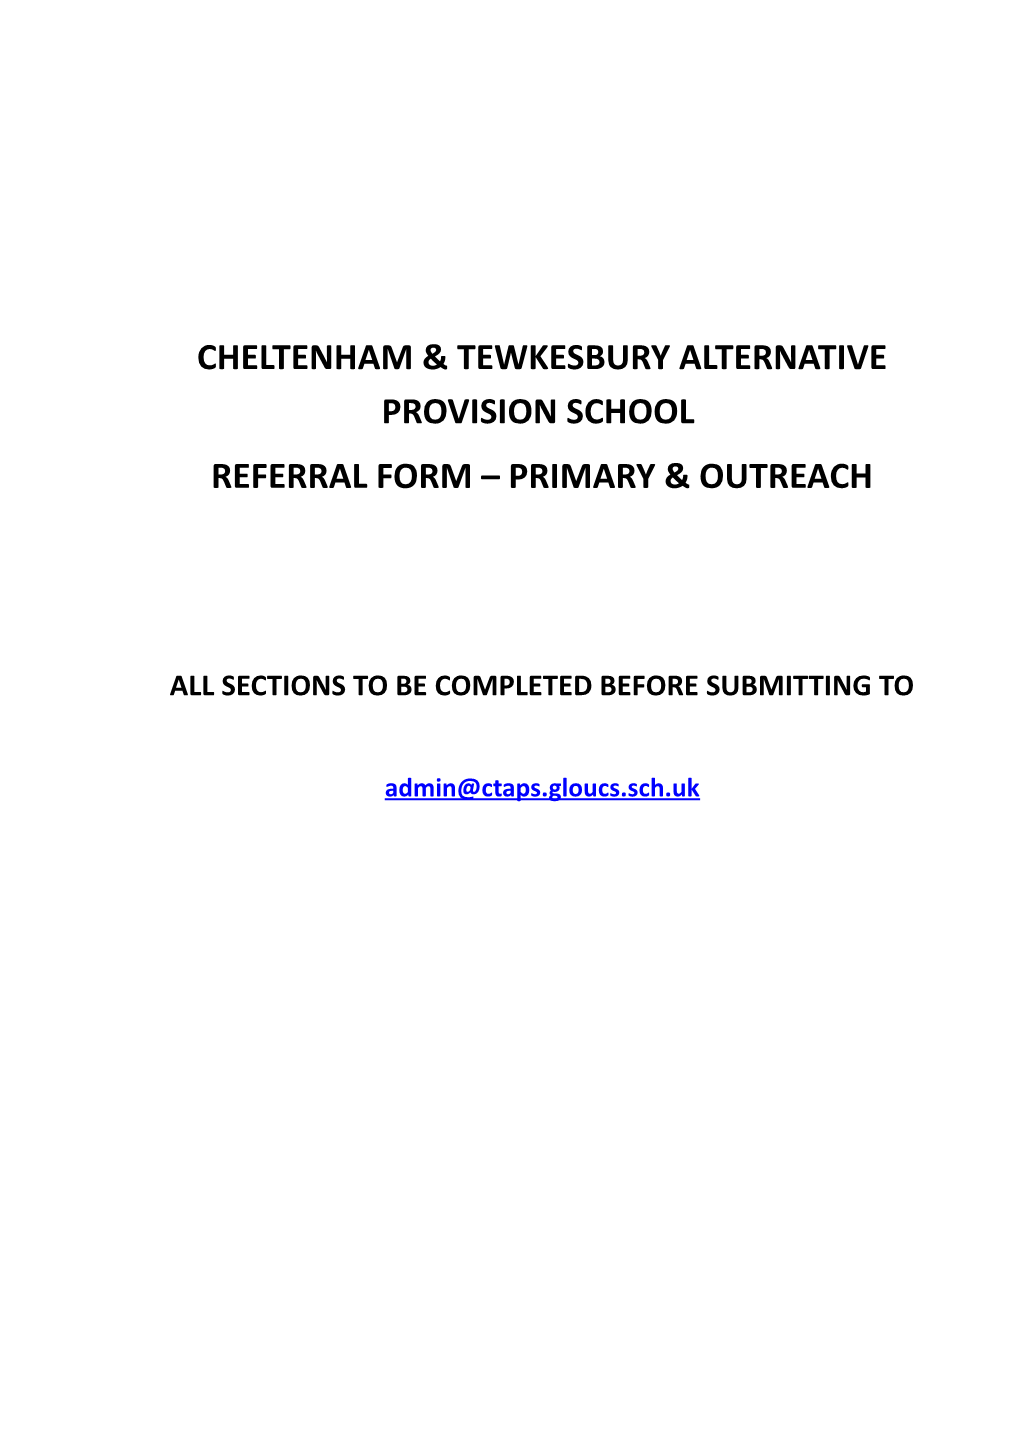 Cheltenham & Tewkesbury Alternative Provision School